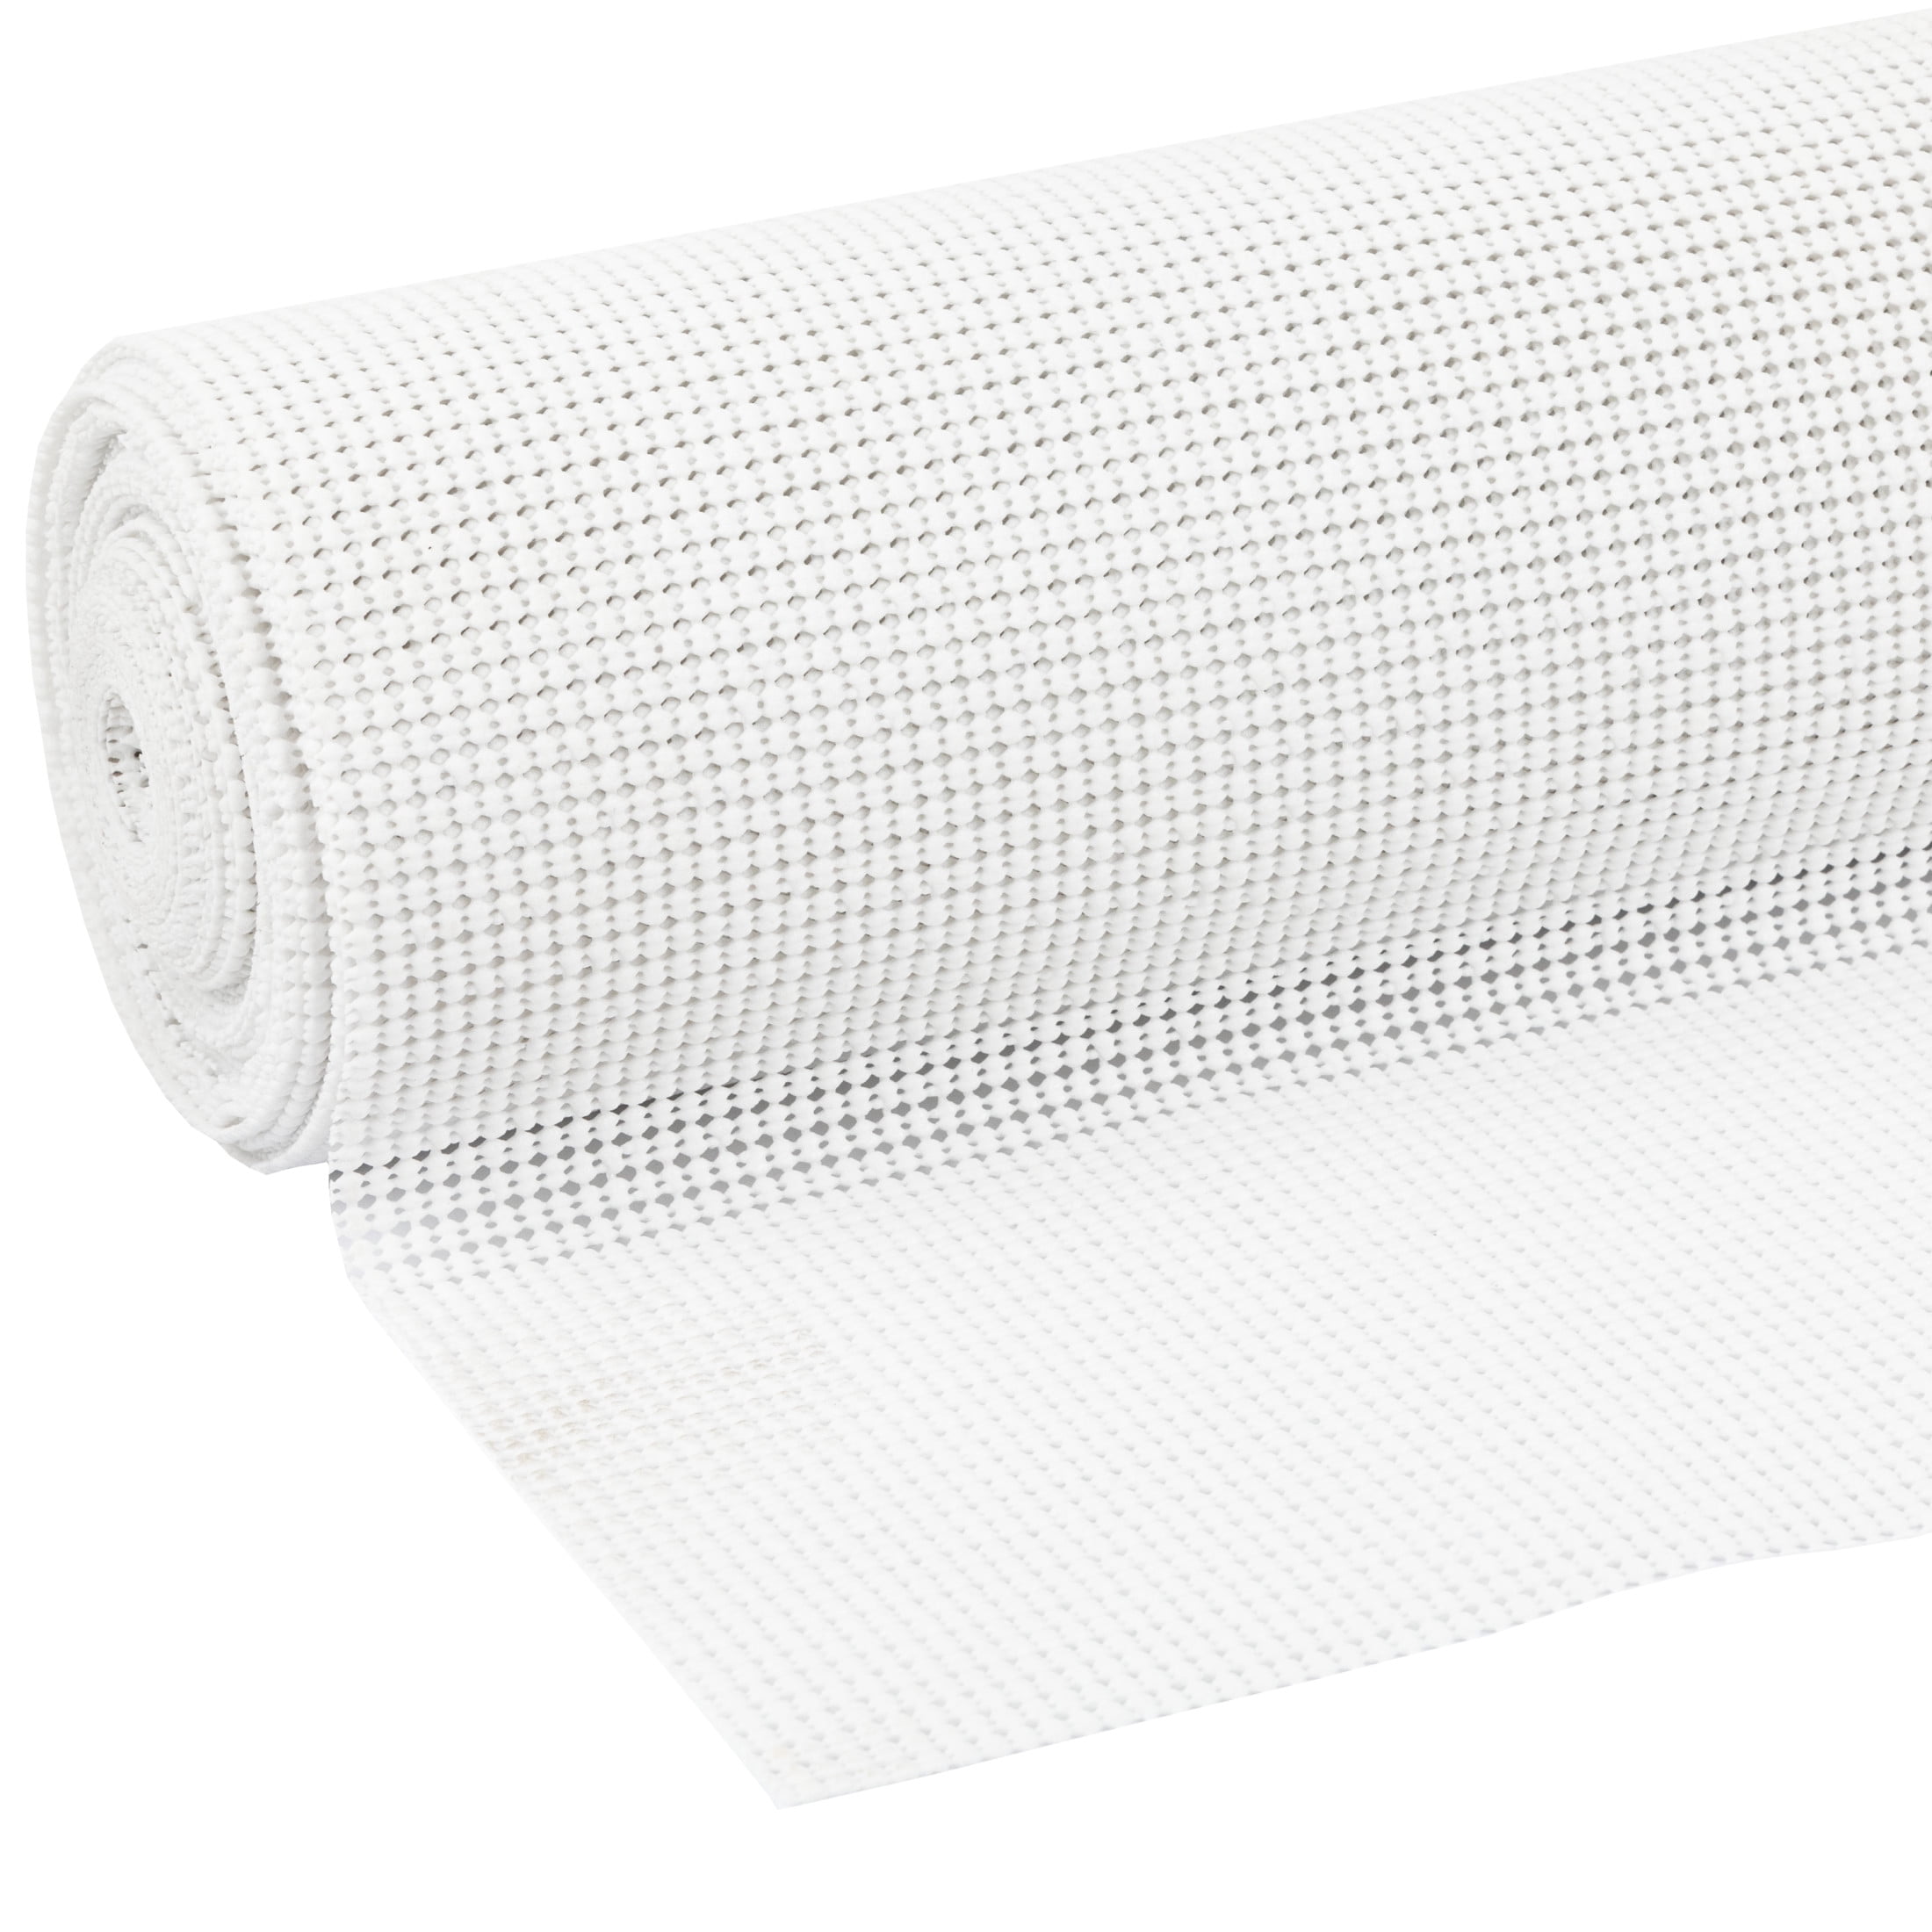 Select Grip? EasyLiner® Brand Shelf Liner - White, 20 in. x 18 ft.